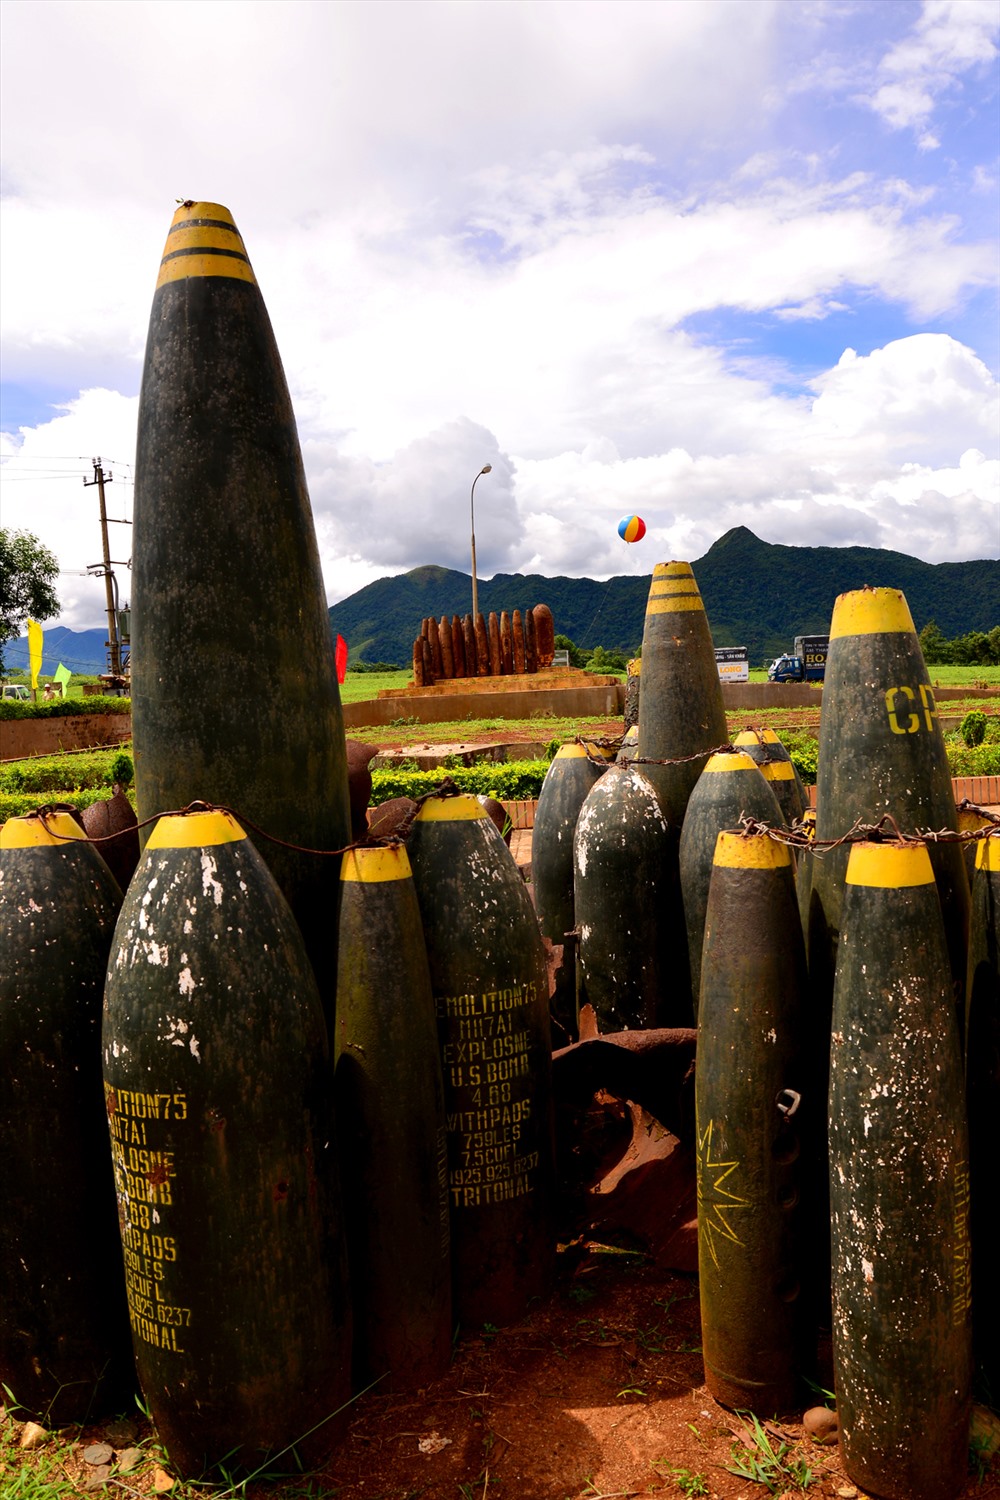 Bom đạn từng là “tử thần” tại mảnh đất này bây giờ được trưng bày tại khu di tích sân bay Tà Cơn. Ảnh: HA.